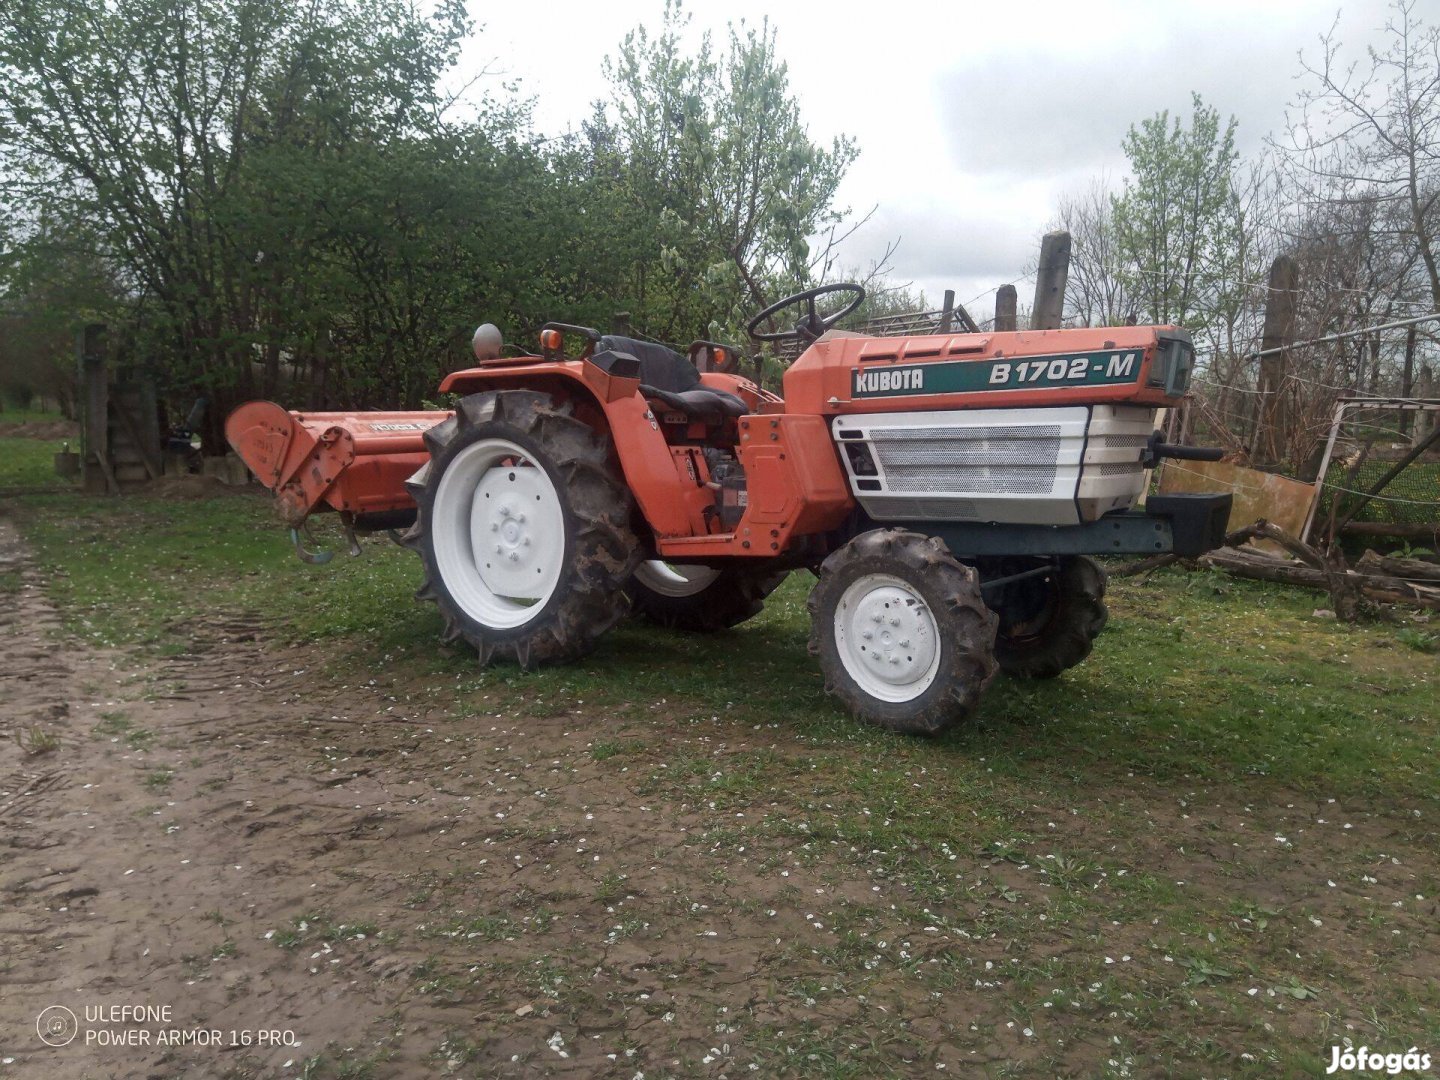 Traktor Kubota B1702-M 17Le 4X4 talajmaróval jó állapotban eladó